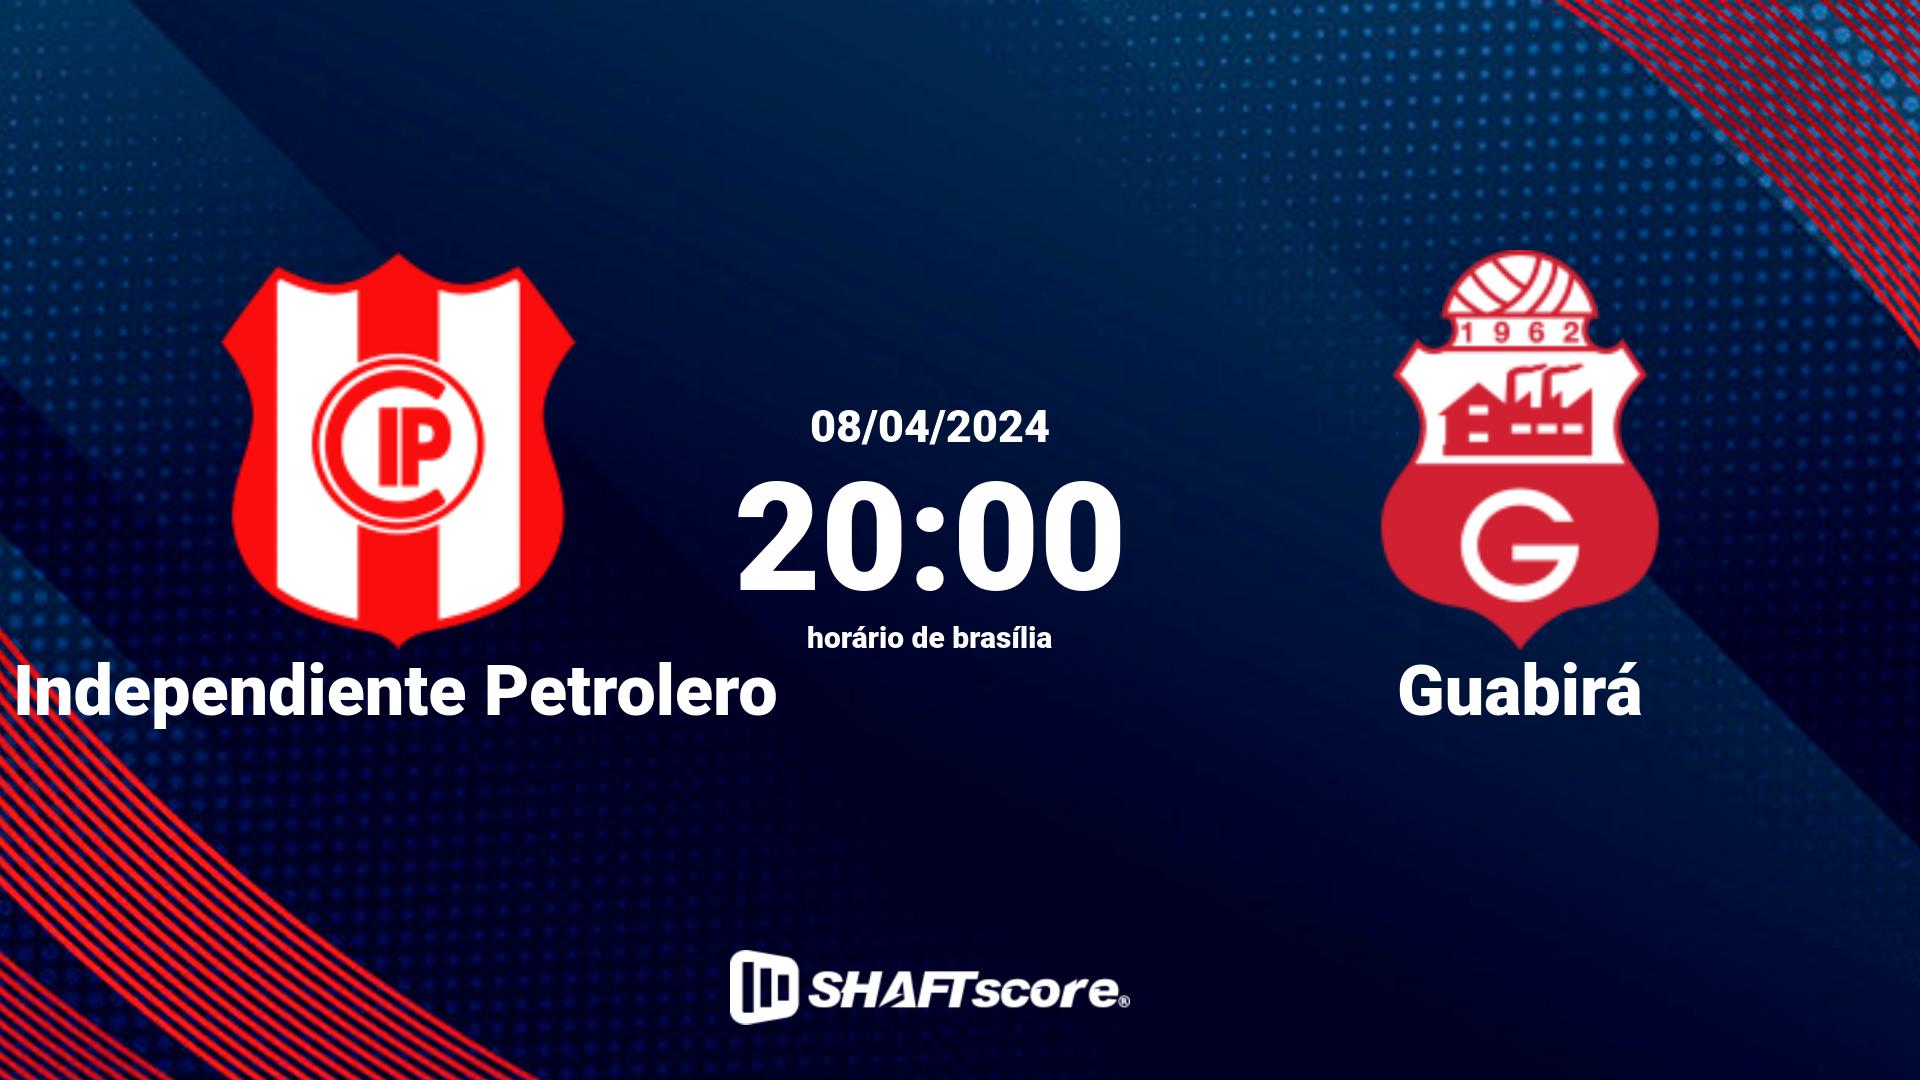 Estatísticas do jogo Independiente Petrolero vs Guabirá 08.04 20:00